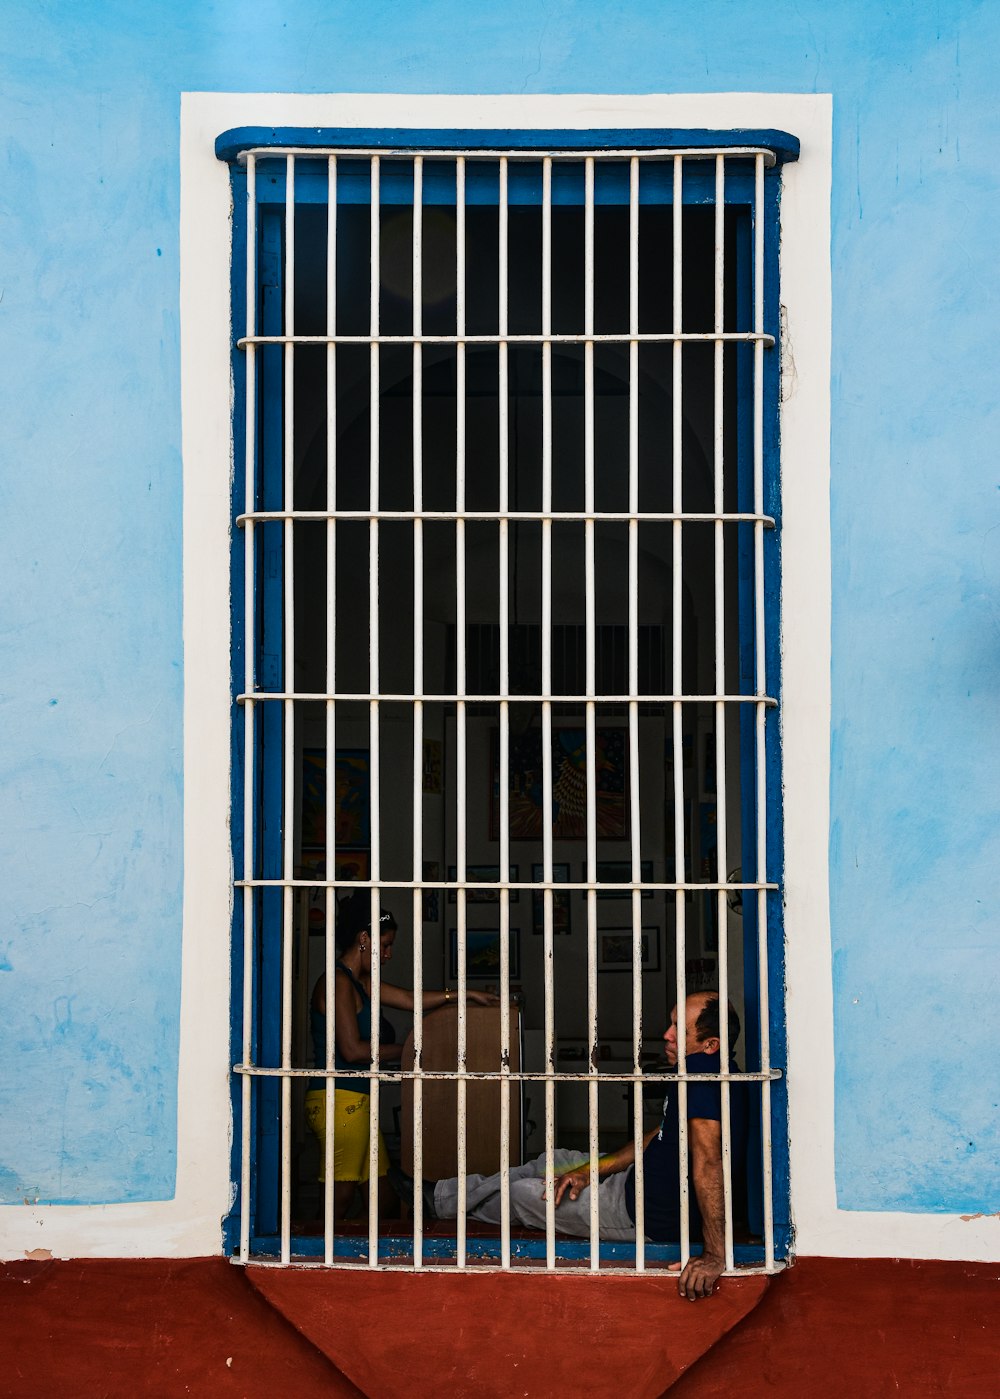 Ein Mann sitzt in einer Gefängniszelle hinter Gittern